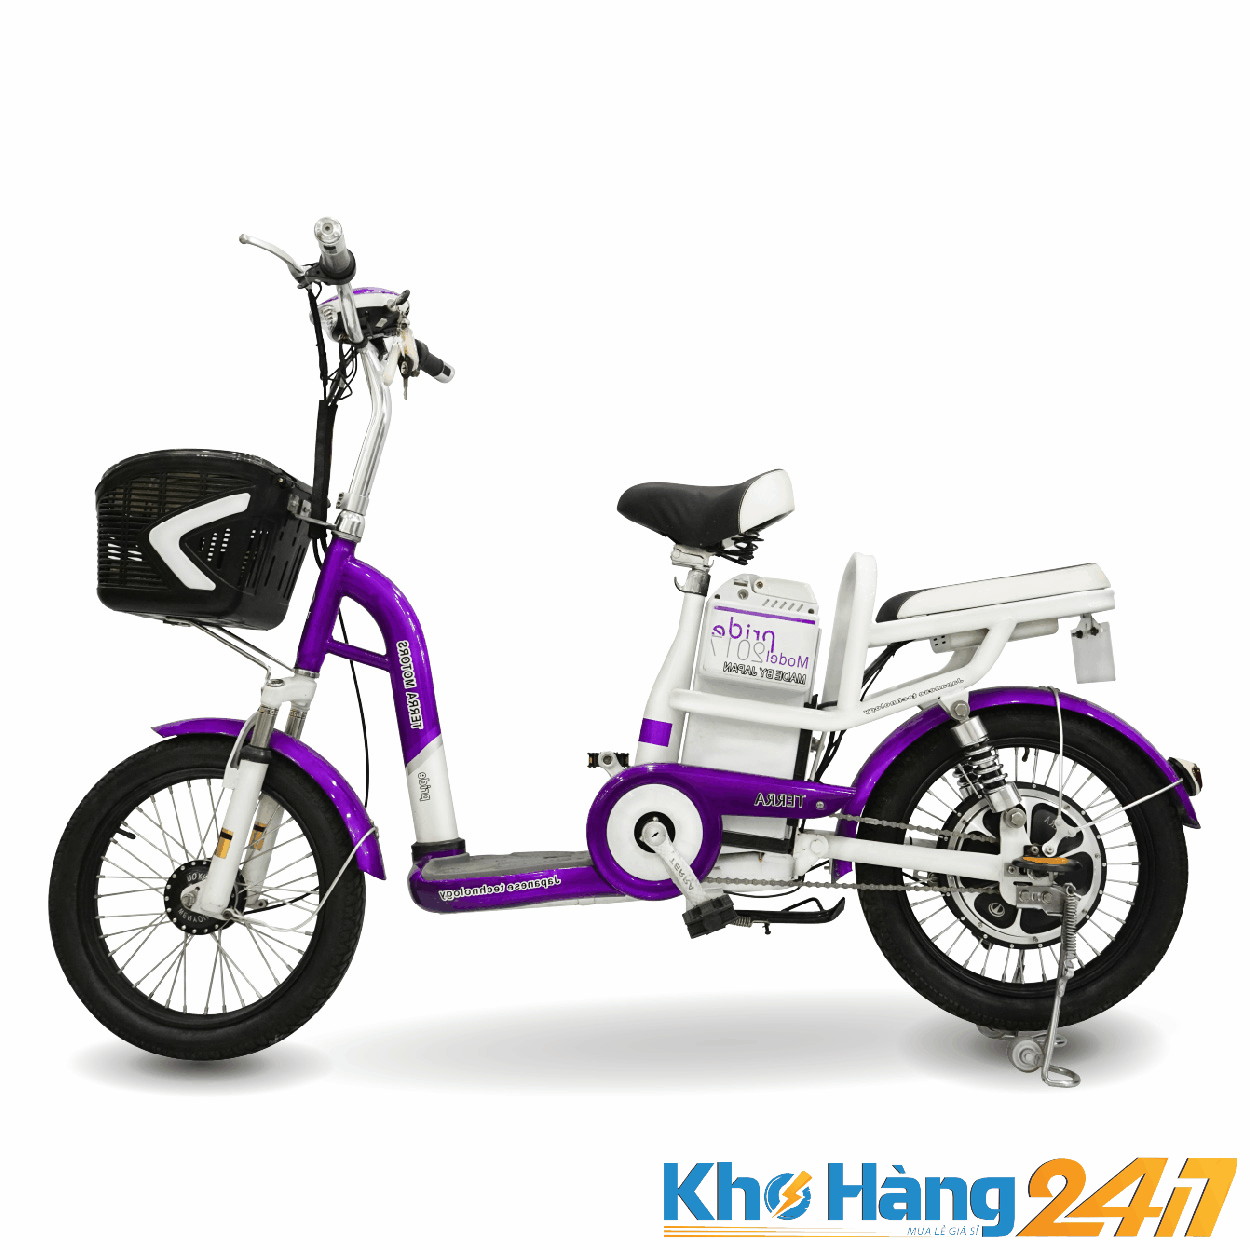 Maket TERRA MOTOR PRIDE chitiet 01 01 1 - Top những mẫu xe đạp điện giá rẻ đang được giới trẻ săn đón tại TP HCM